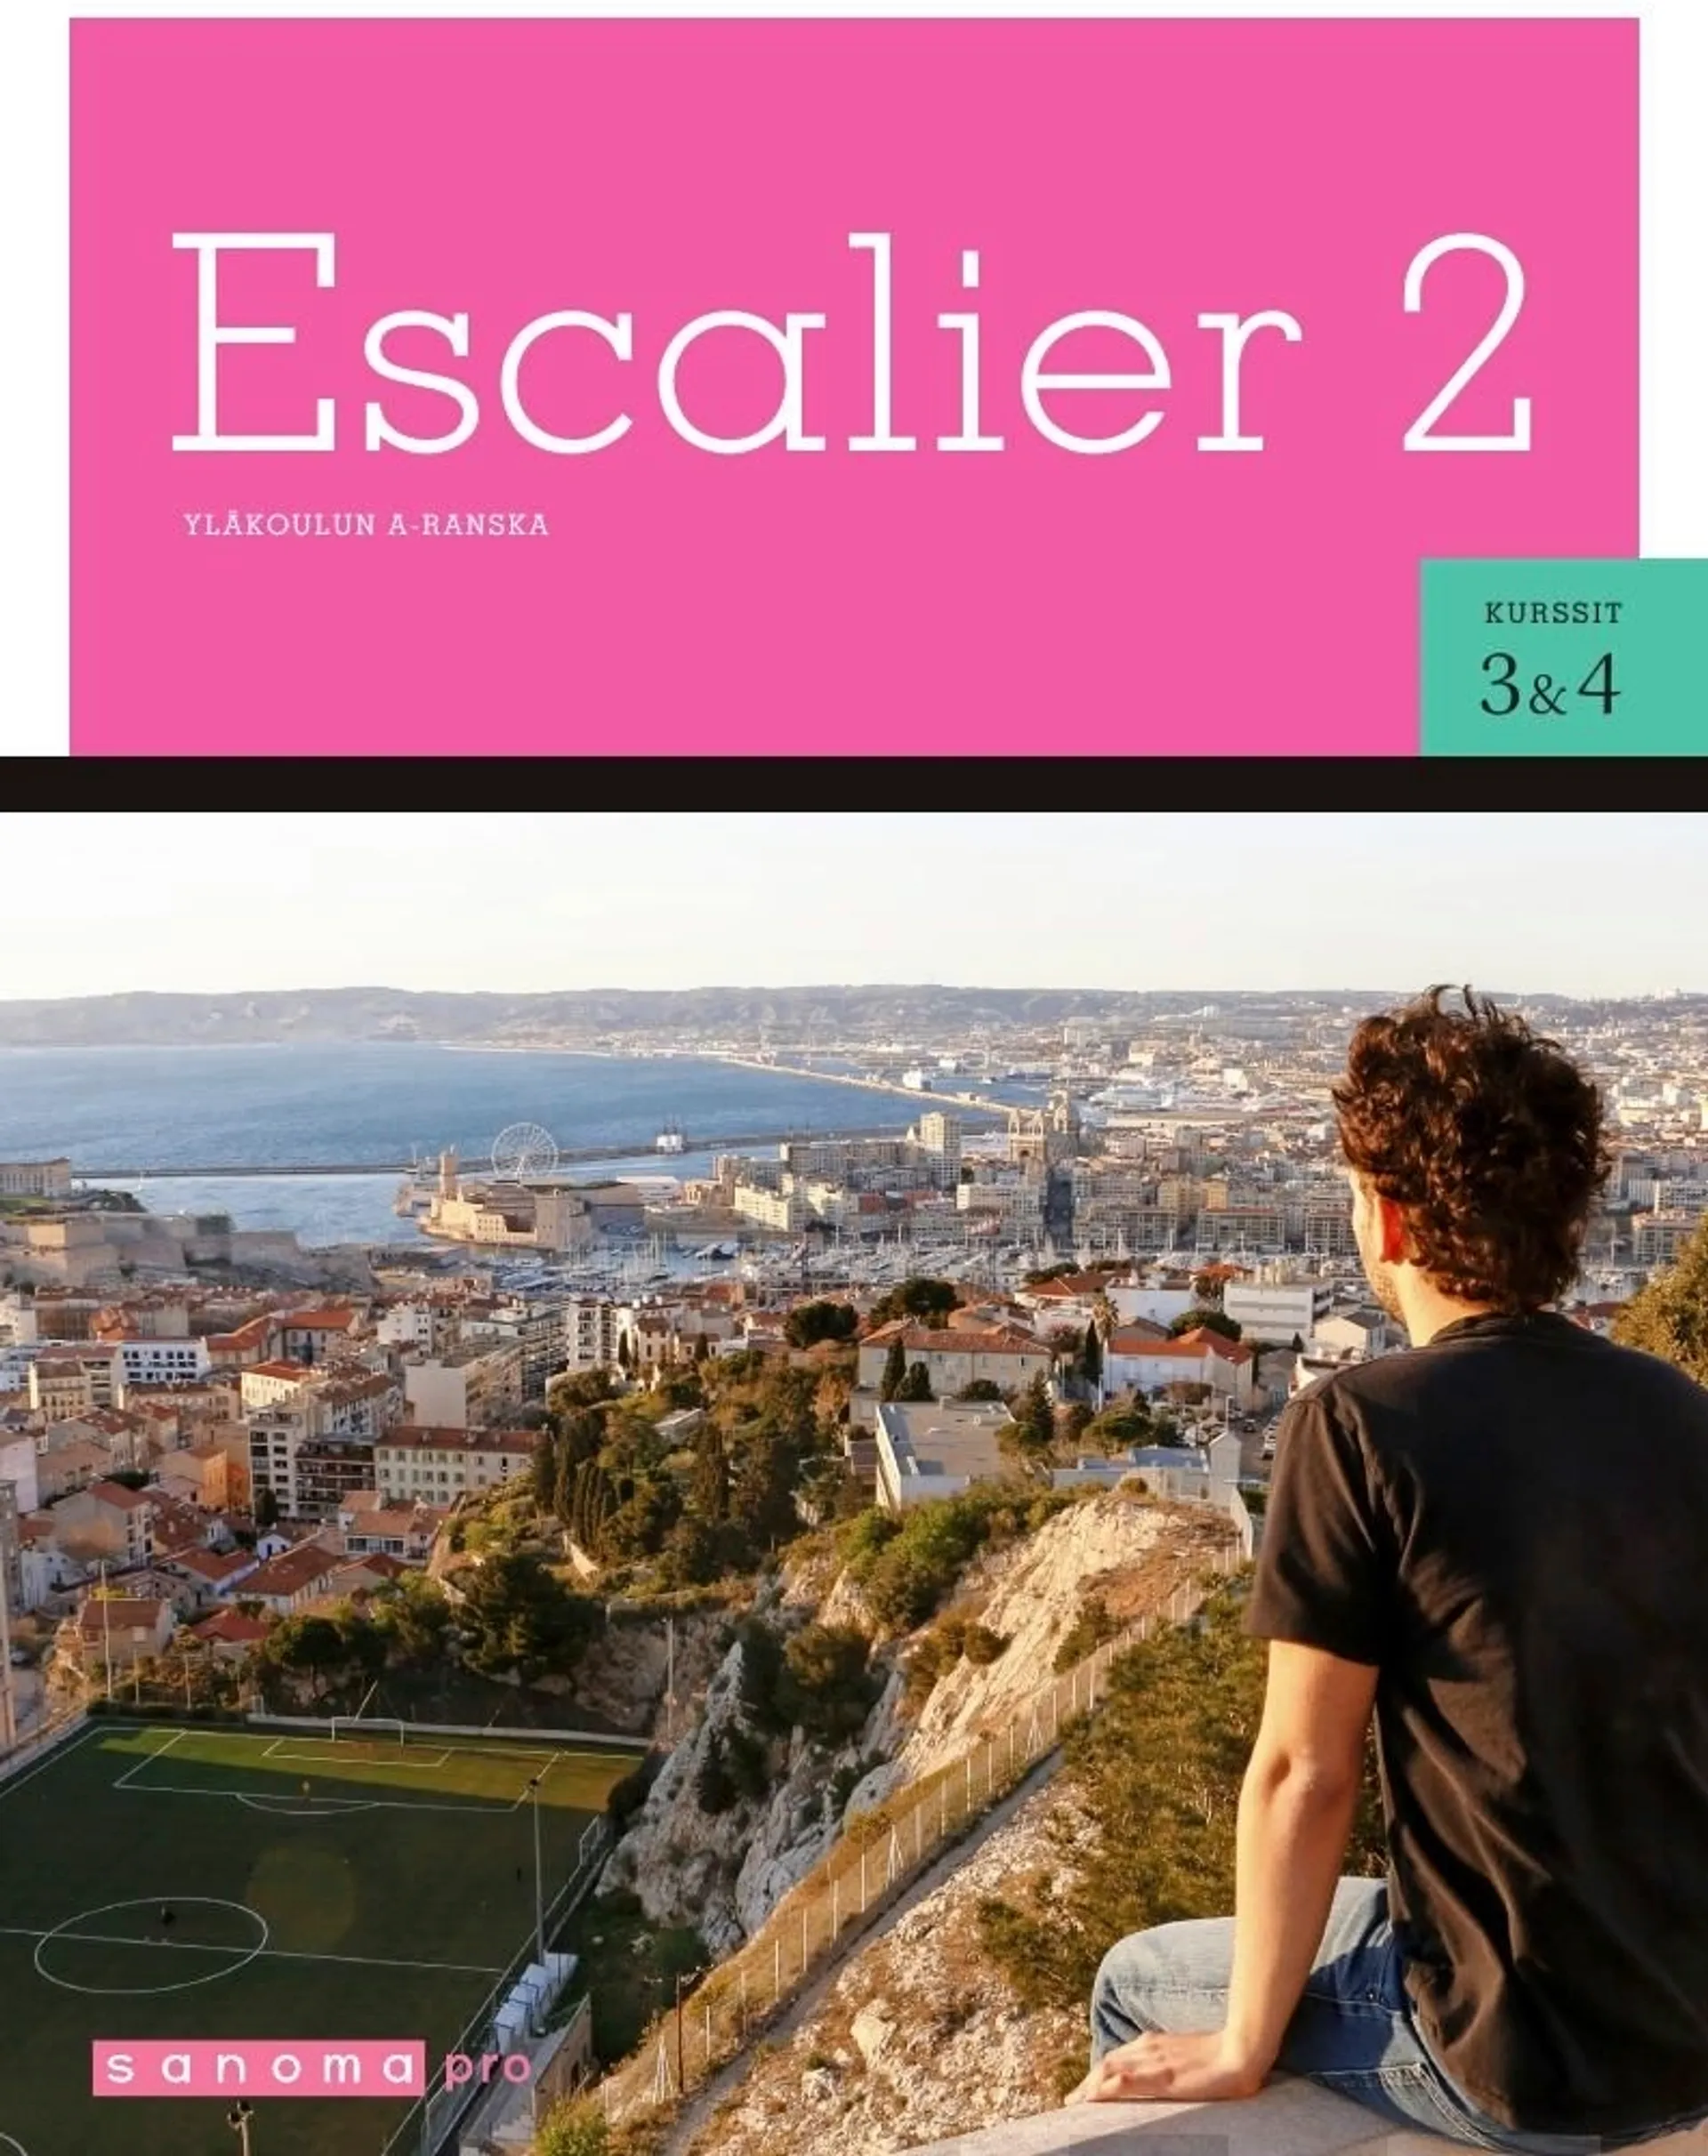 Altschuler, Escalier 2 - Yläkoulun A-ranska, kurssit 3 ja 4